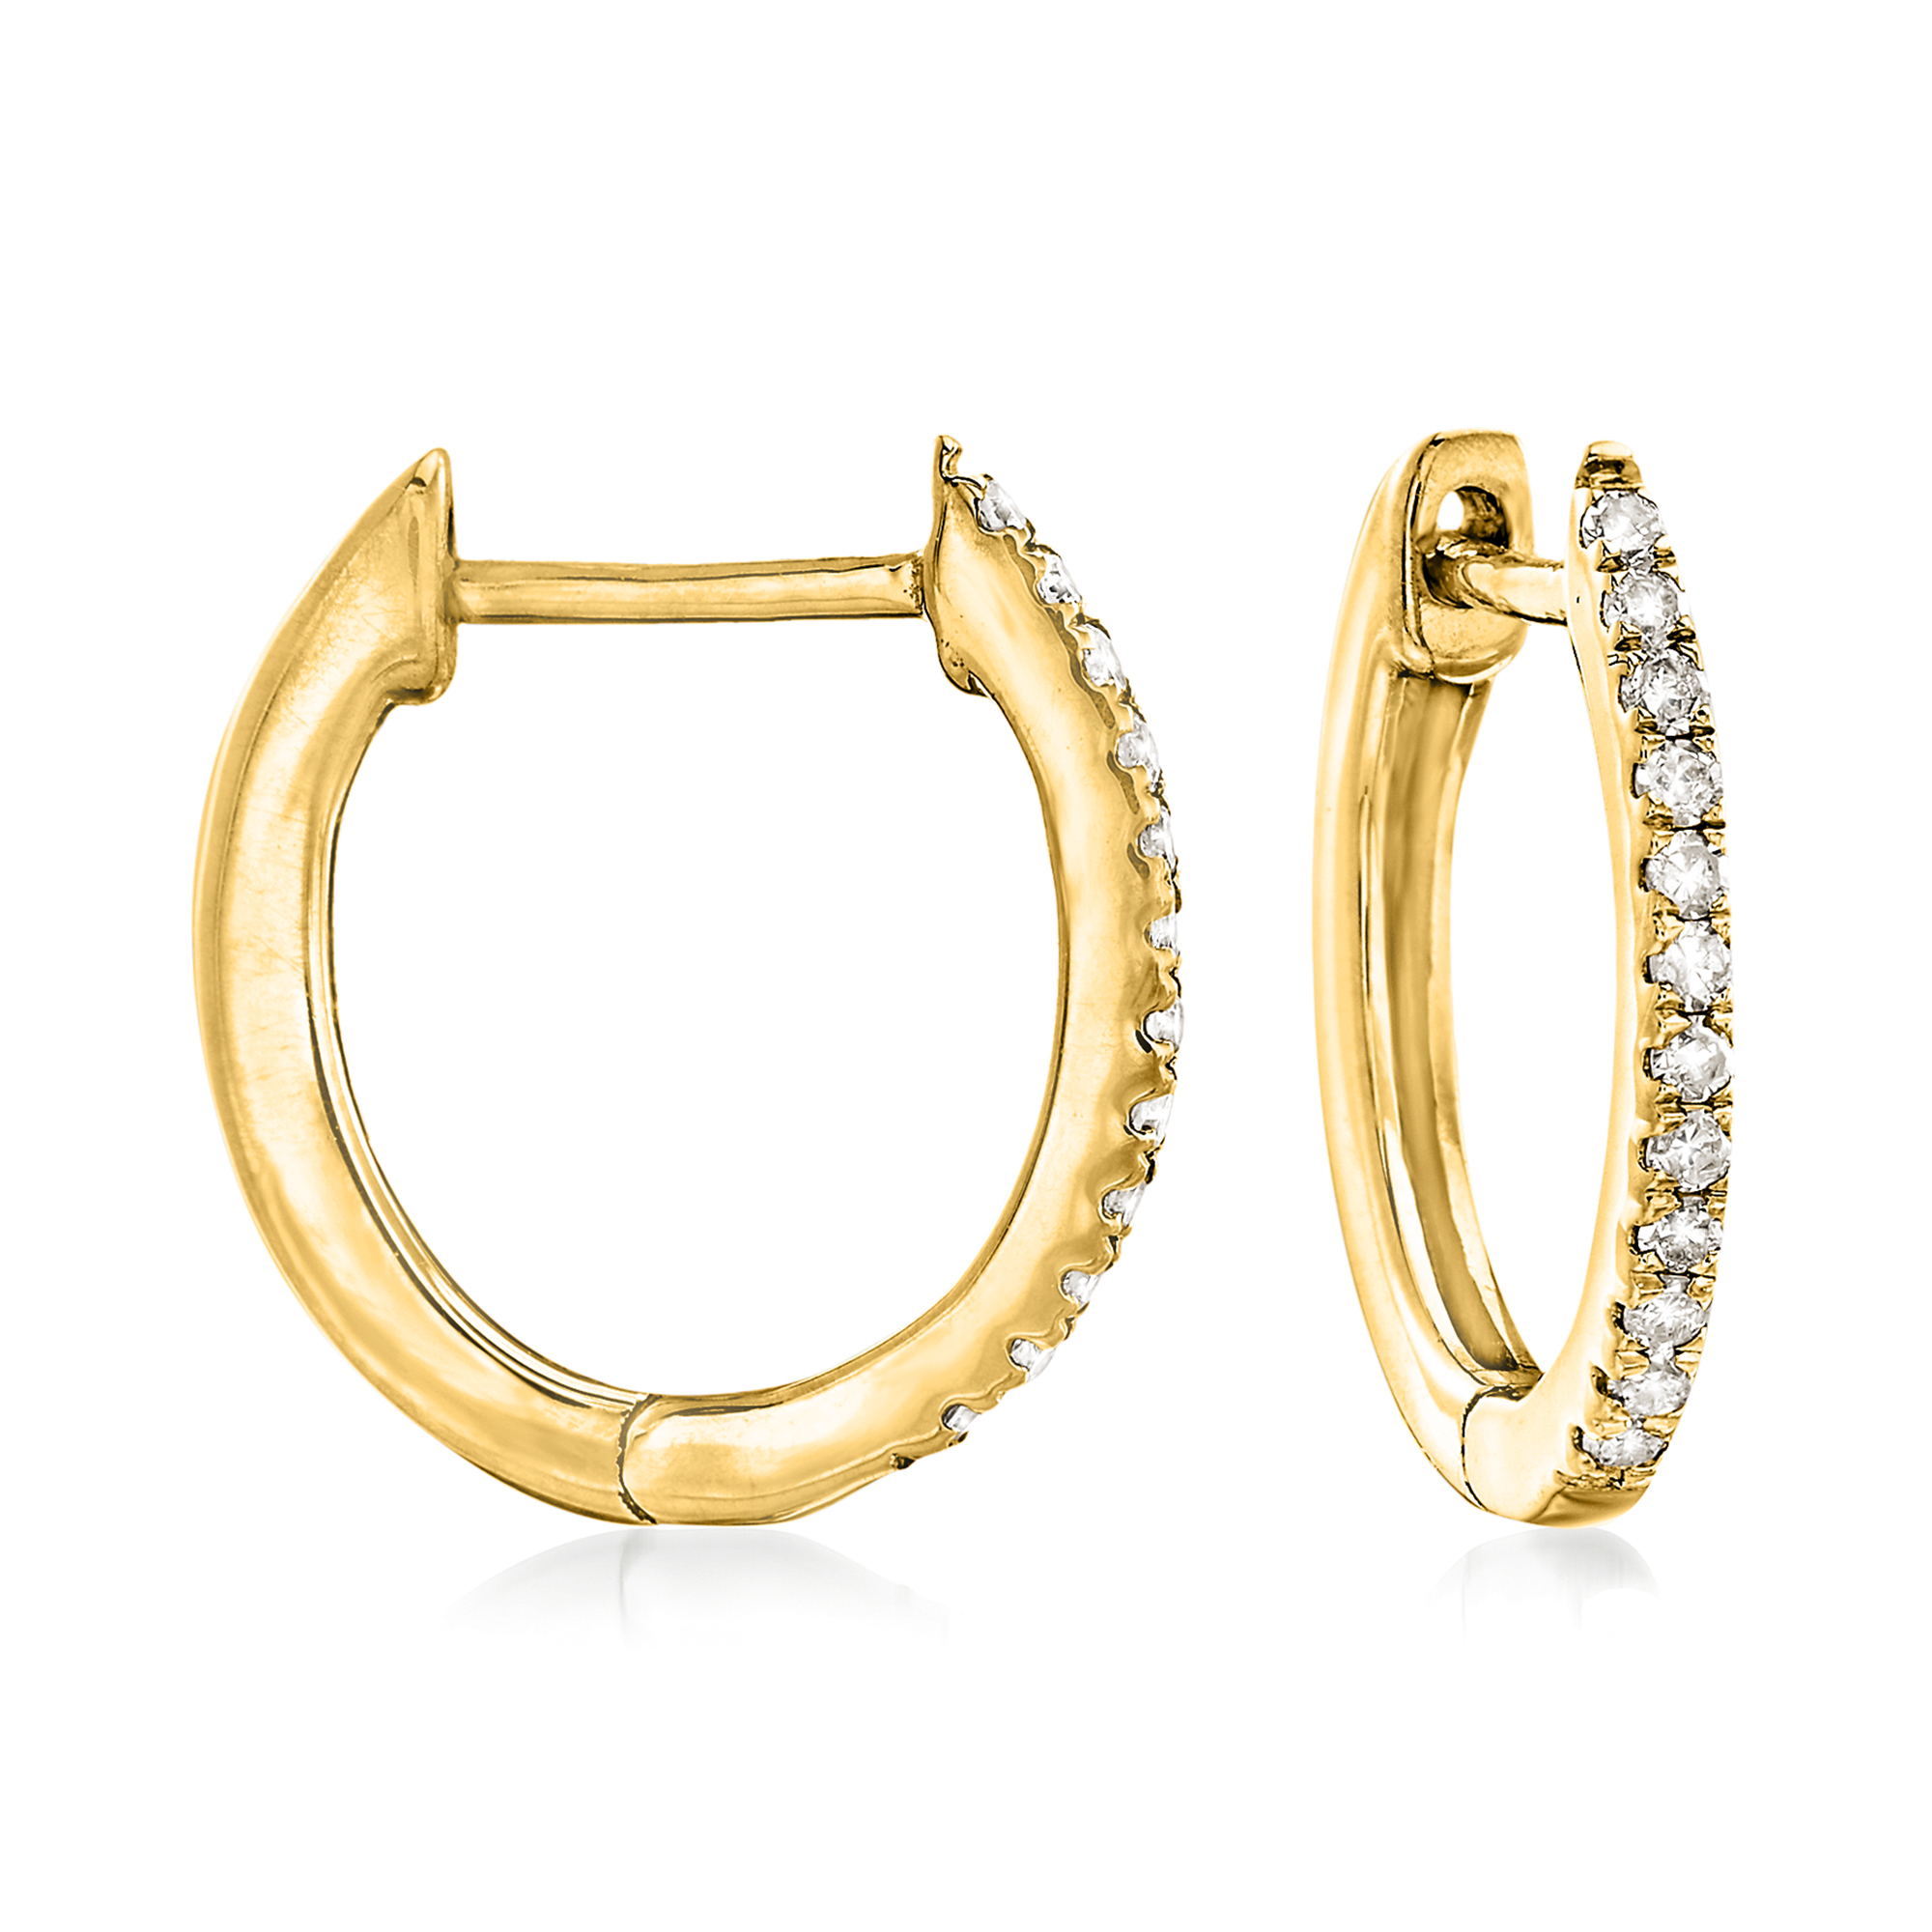 10 ct. t.w. Diamond Huggie Hoop Earrings in 14kt Yellow Gold. 3/8 